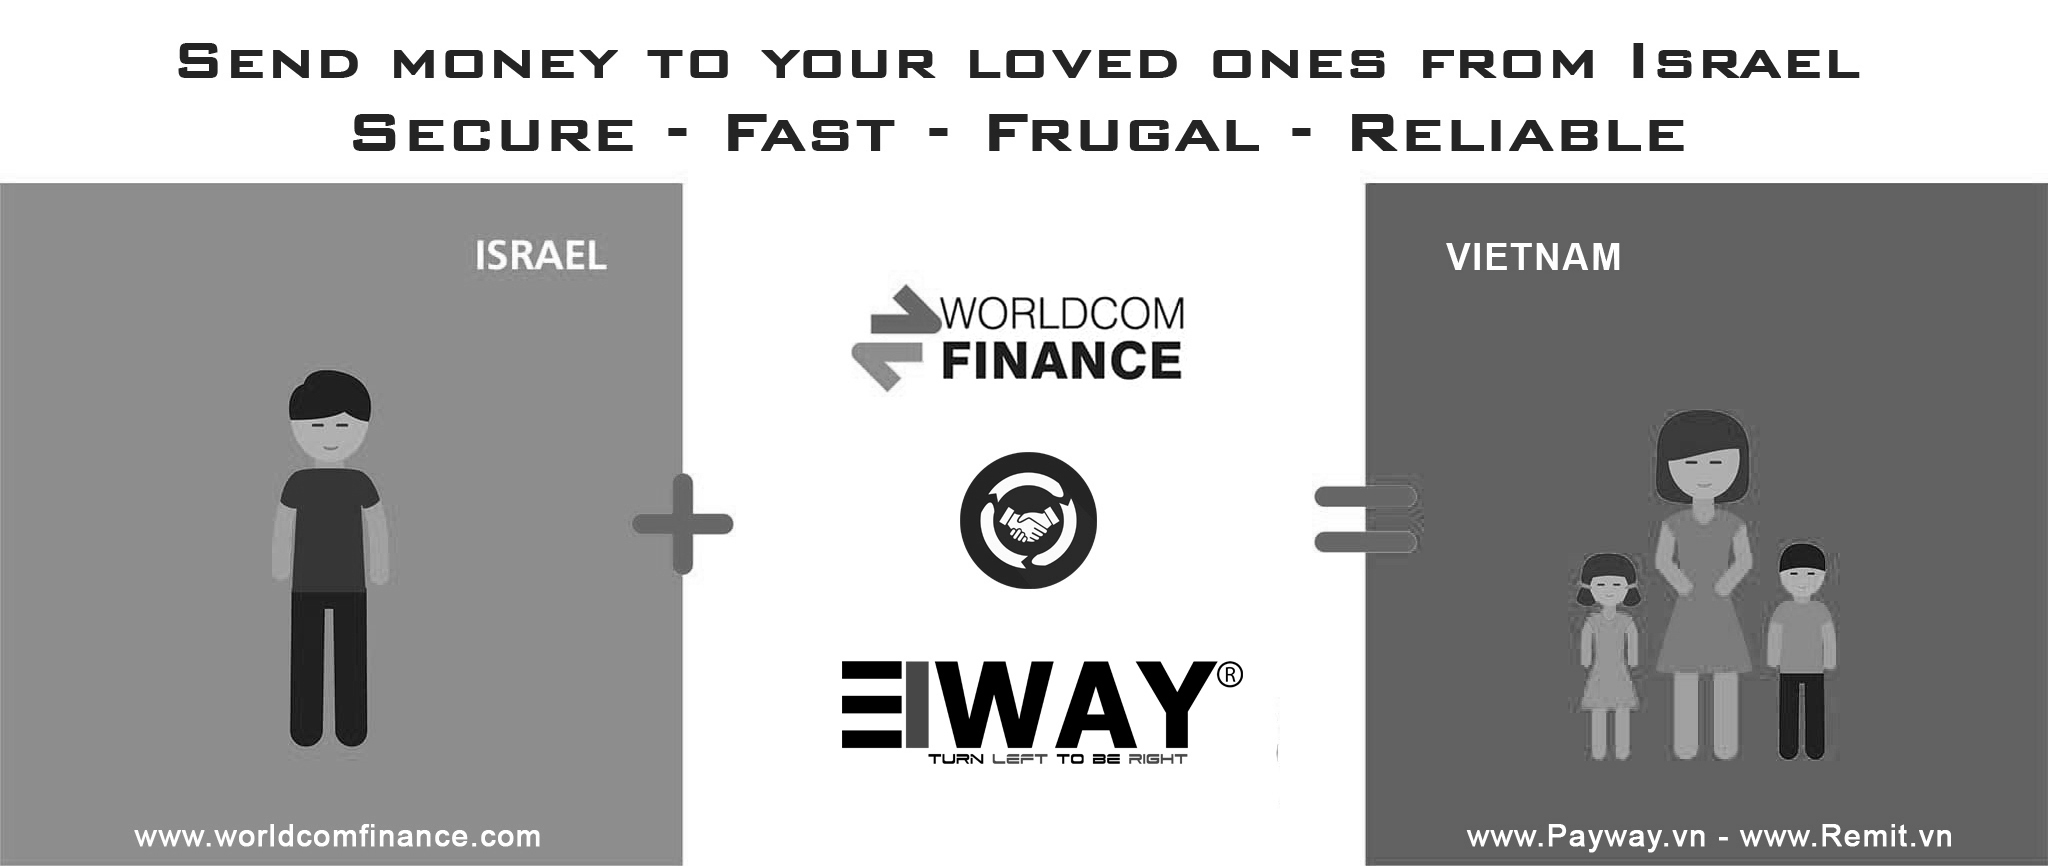 Worldcomfinance - eWAY hợp tác phát triển dịch vụ chuyển tiền từ Israel